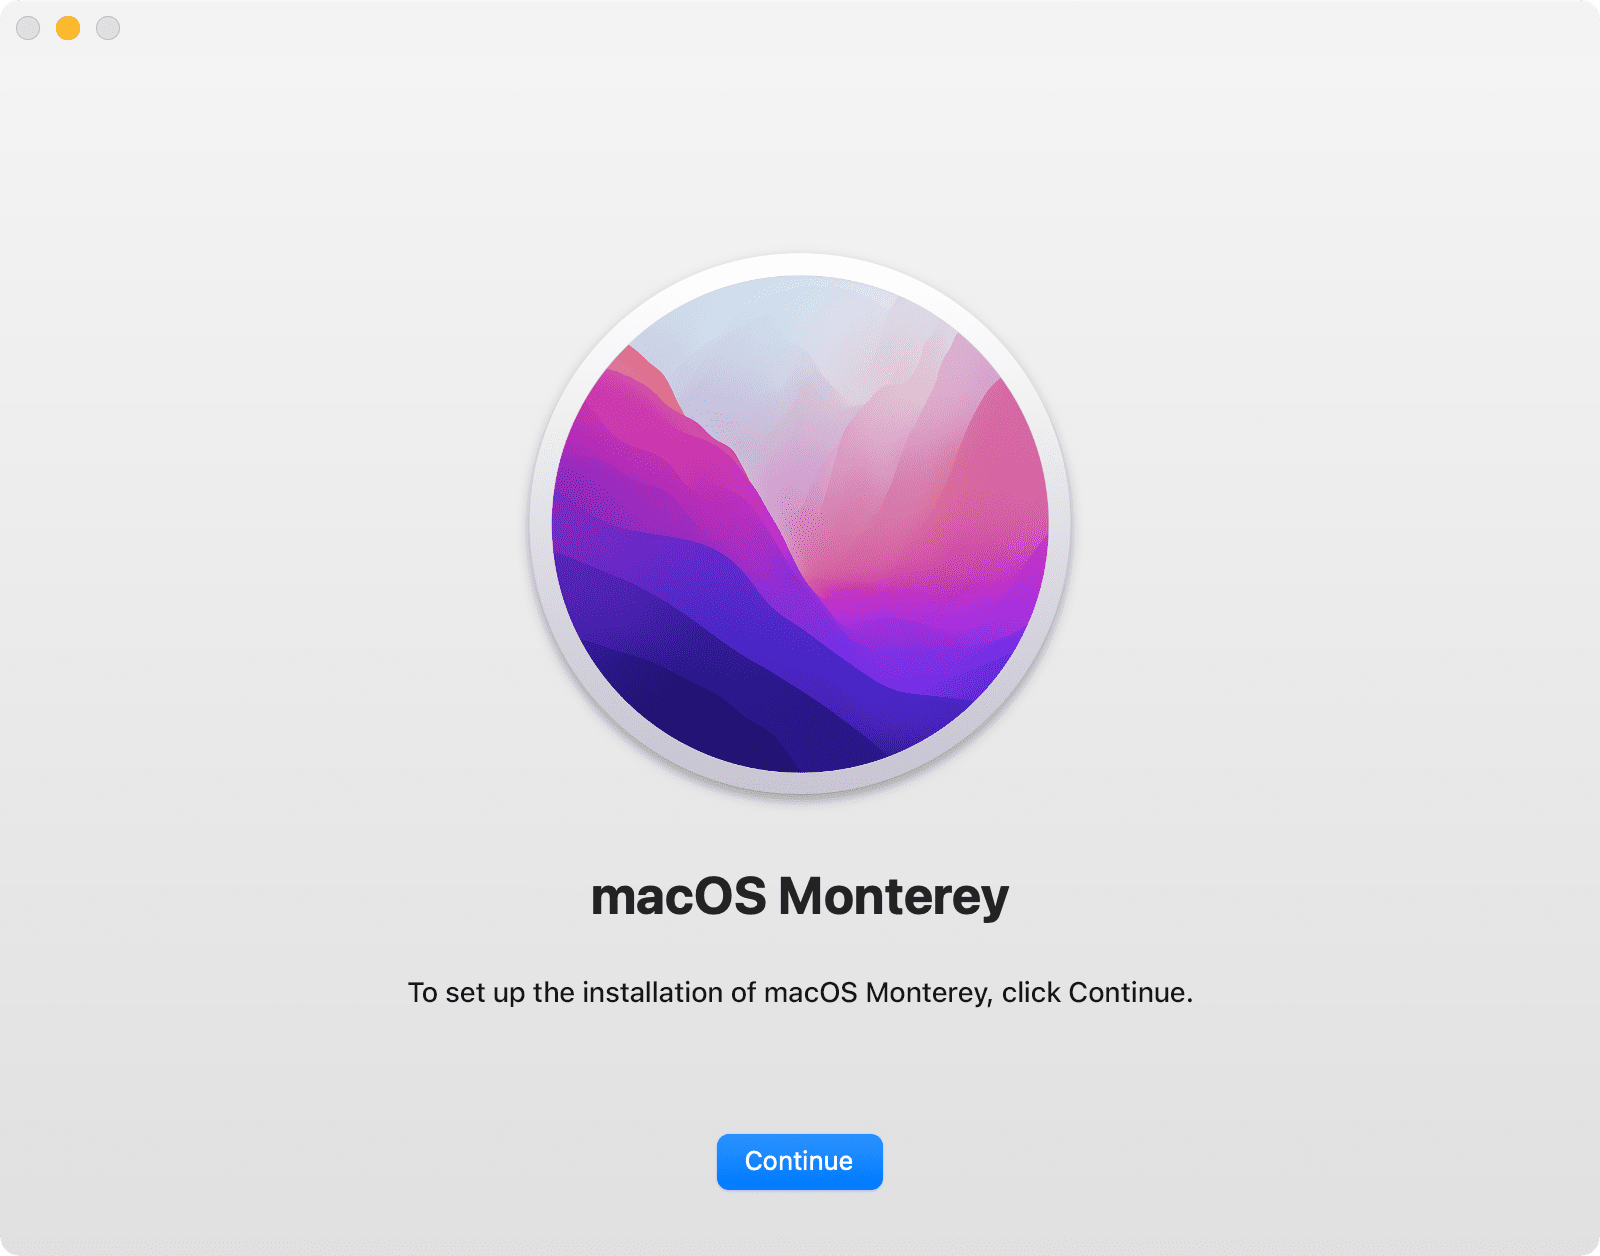 macOS Monterey installer window